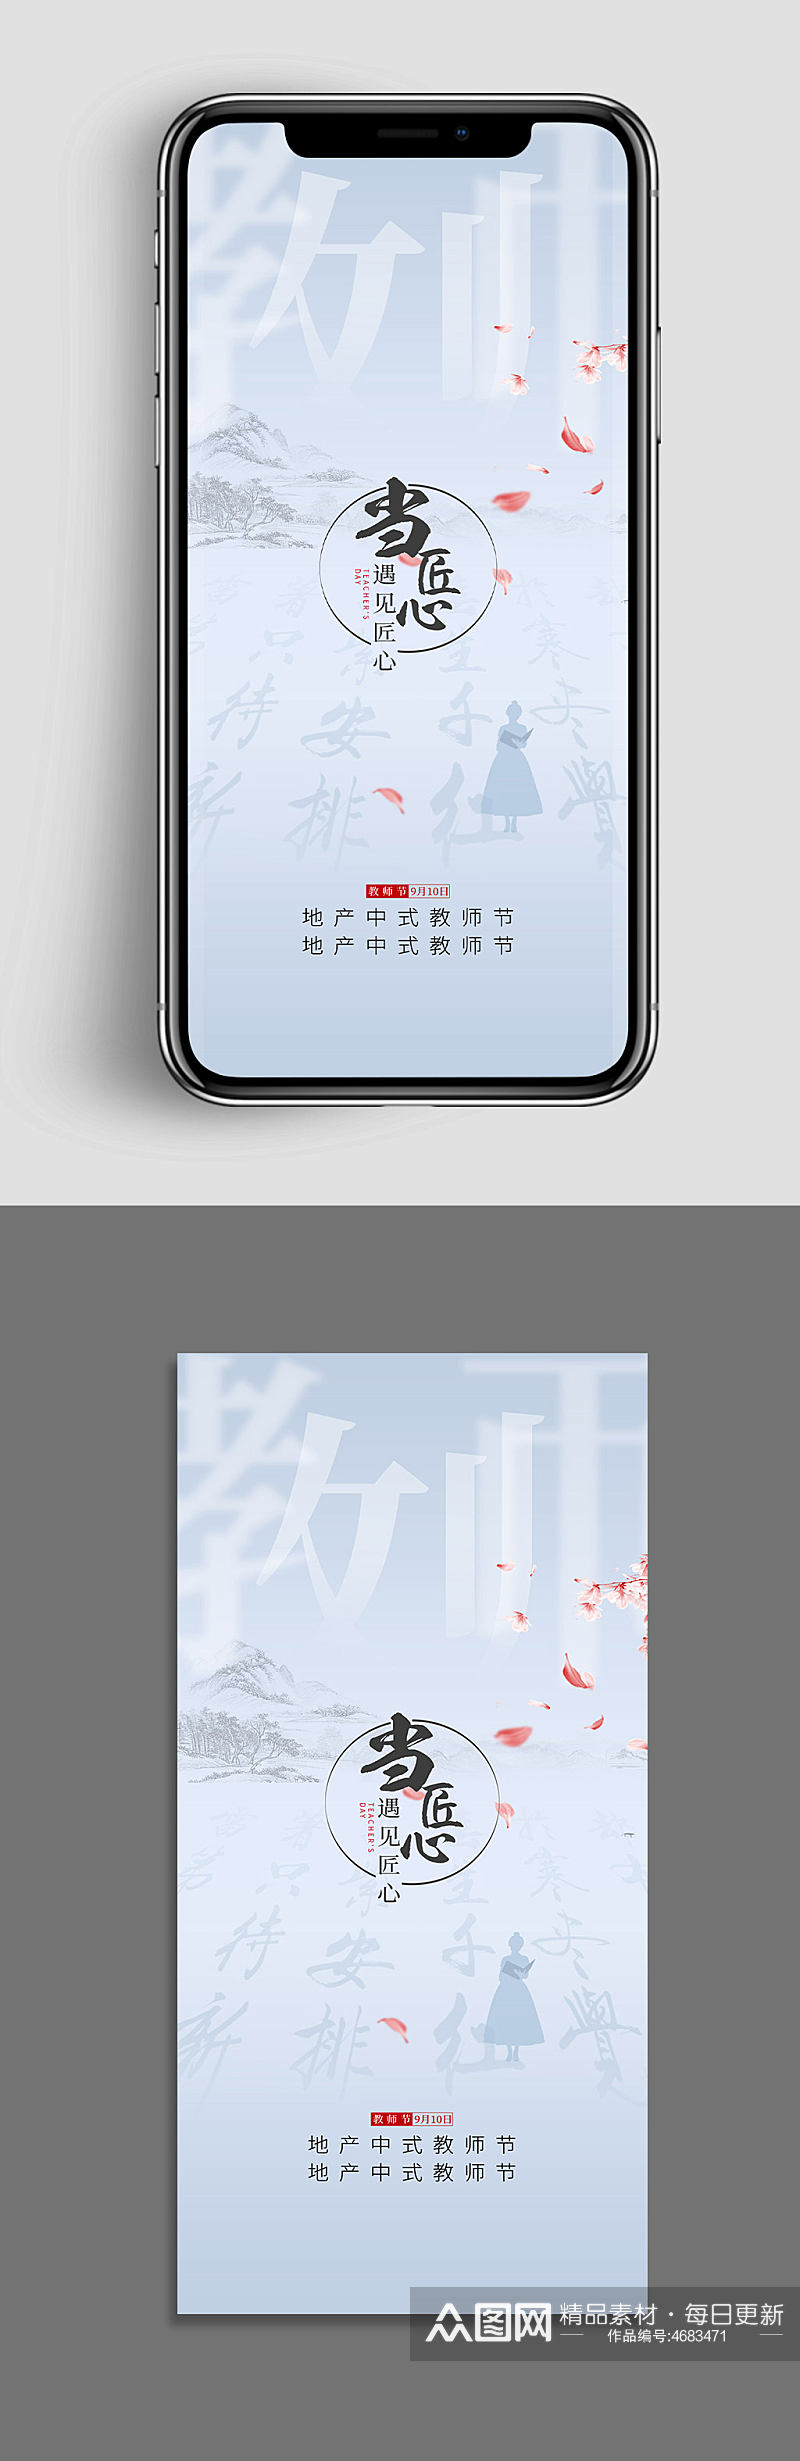 中式水墨风教师节手机海报素材